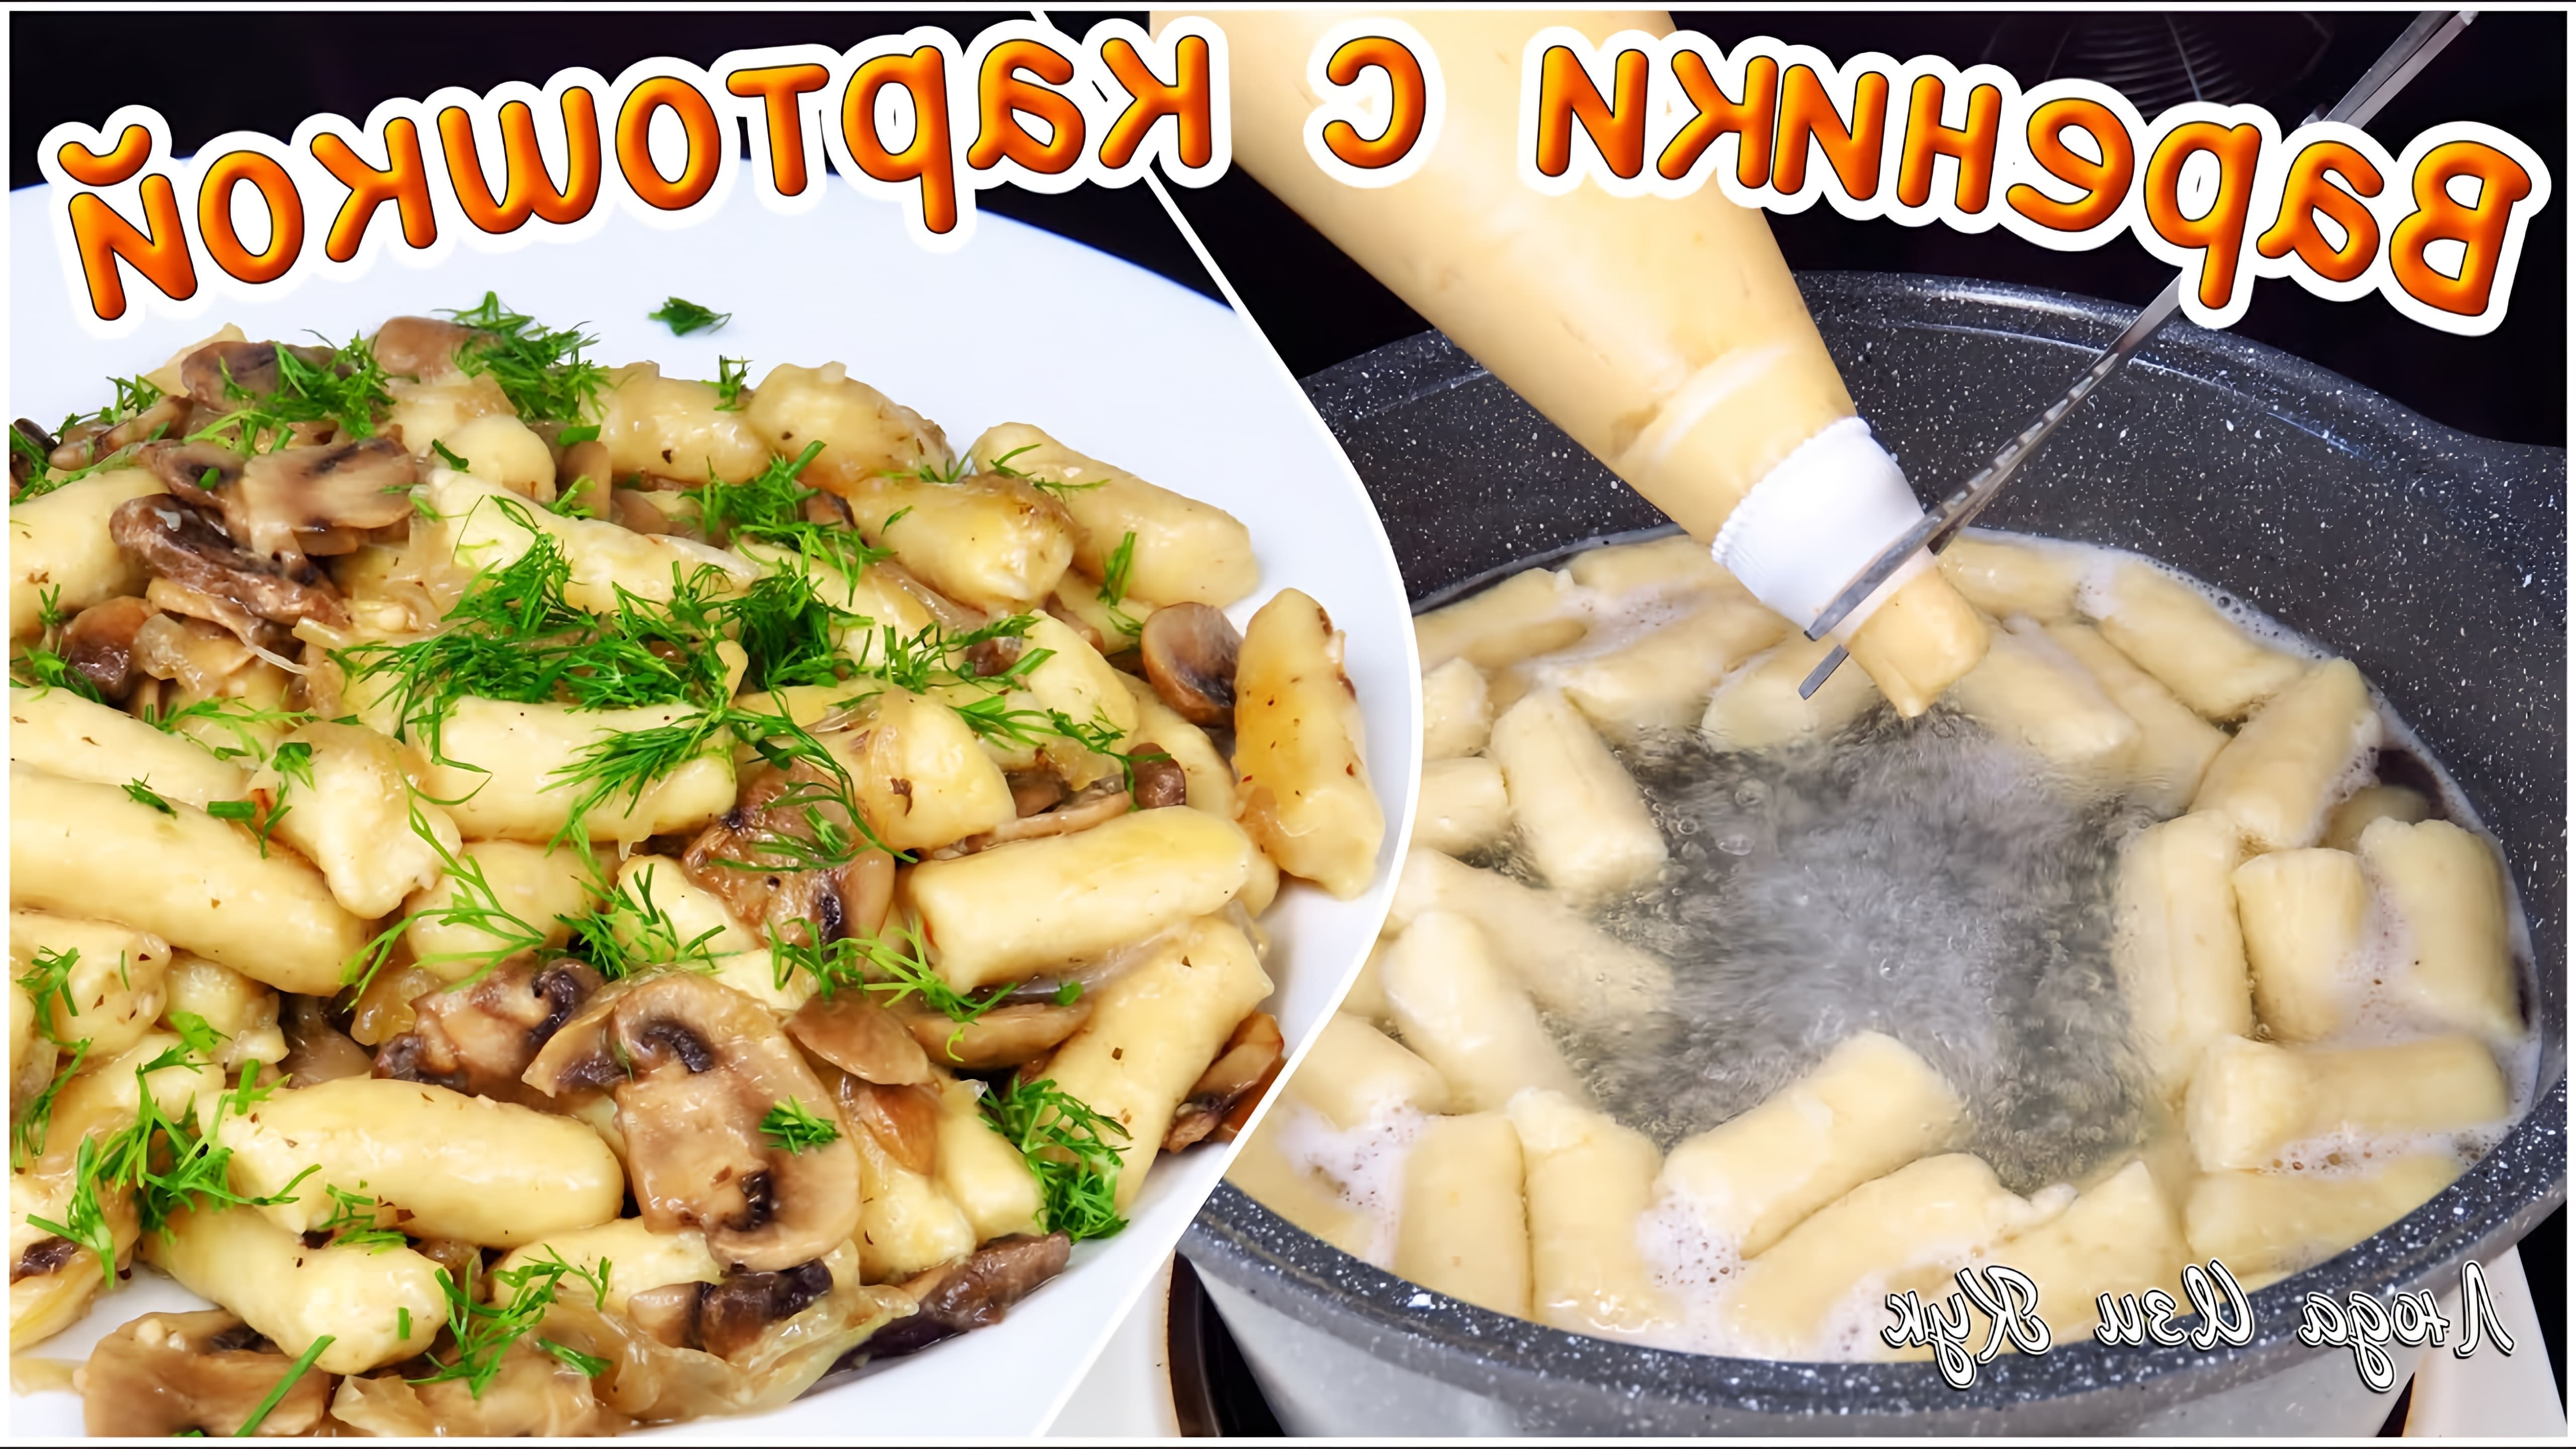 В этом видео демонстрируется рецепт приготовления ленивых вареников с картошкой